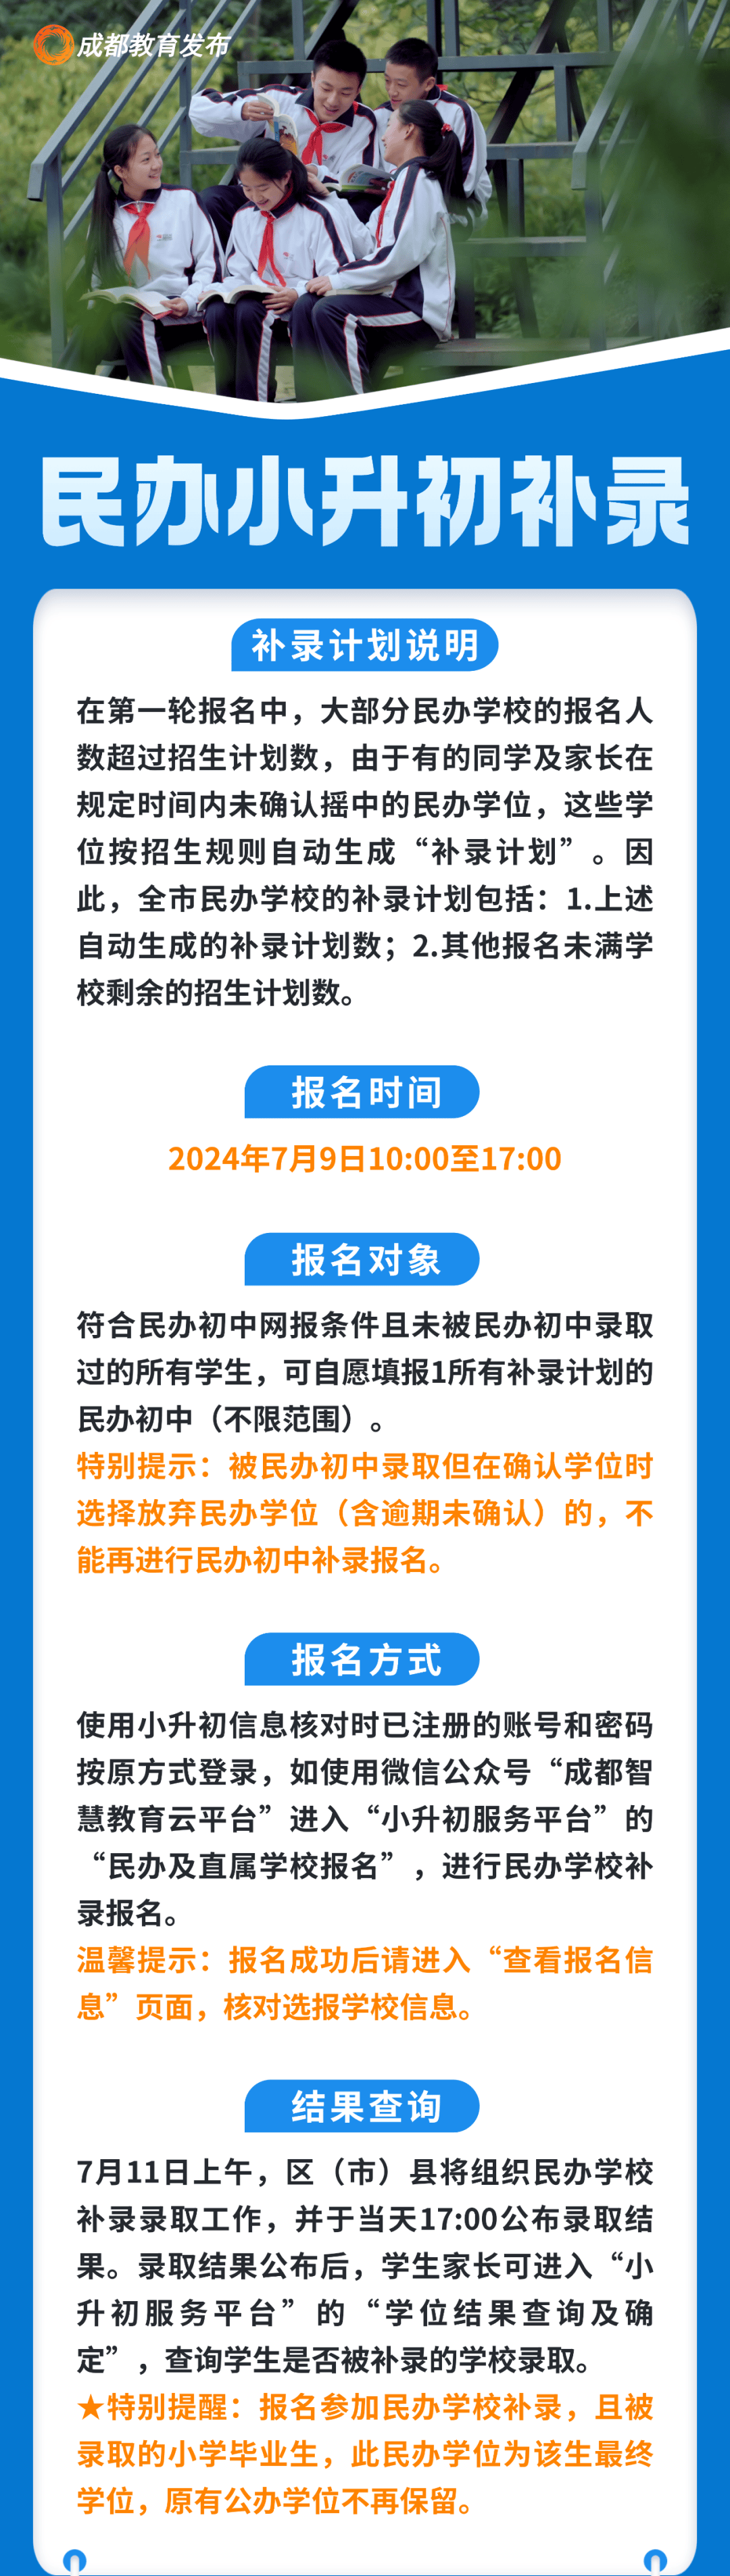 7月9日,成都市民办学校小升初补录报名!